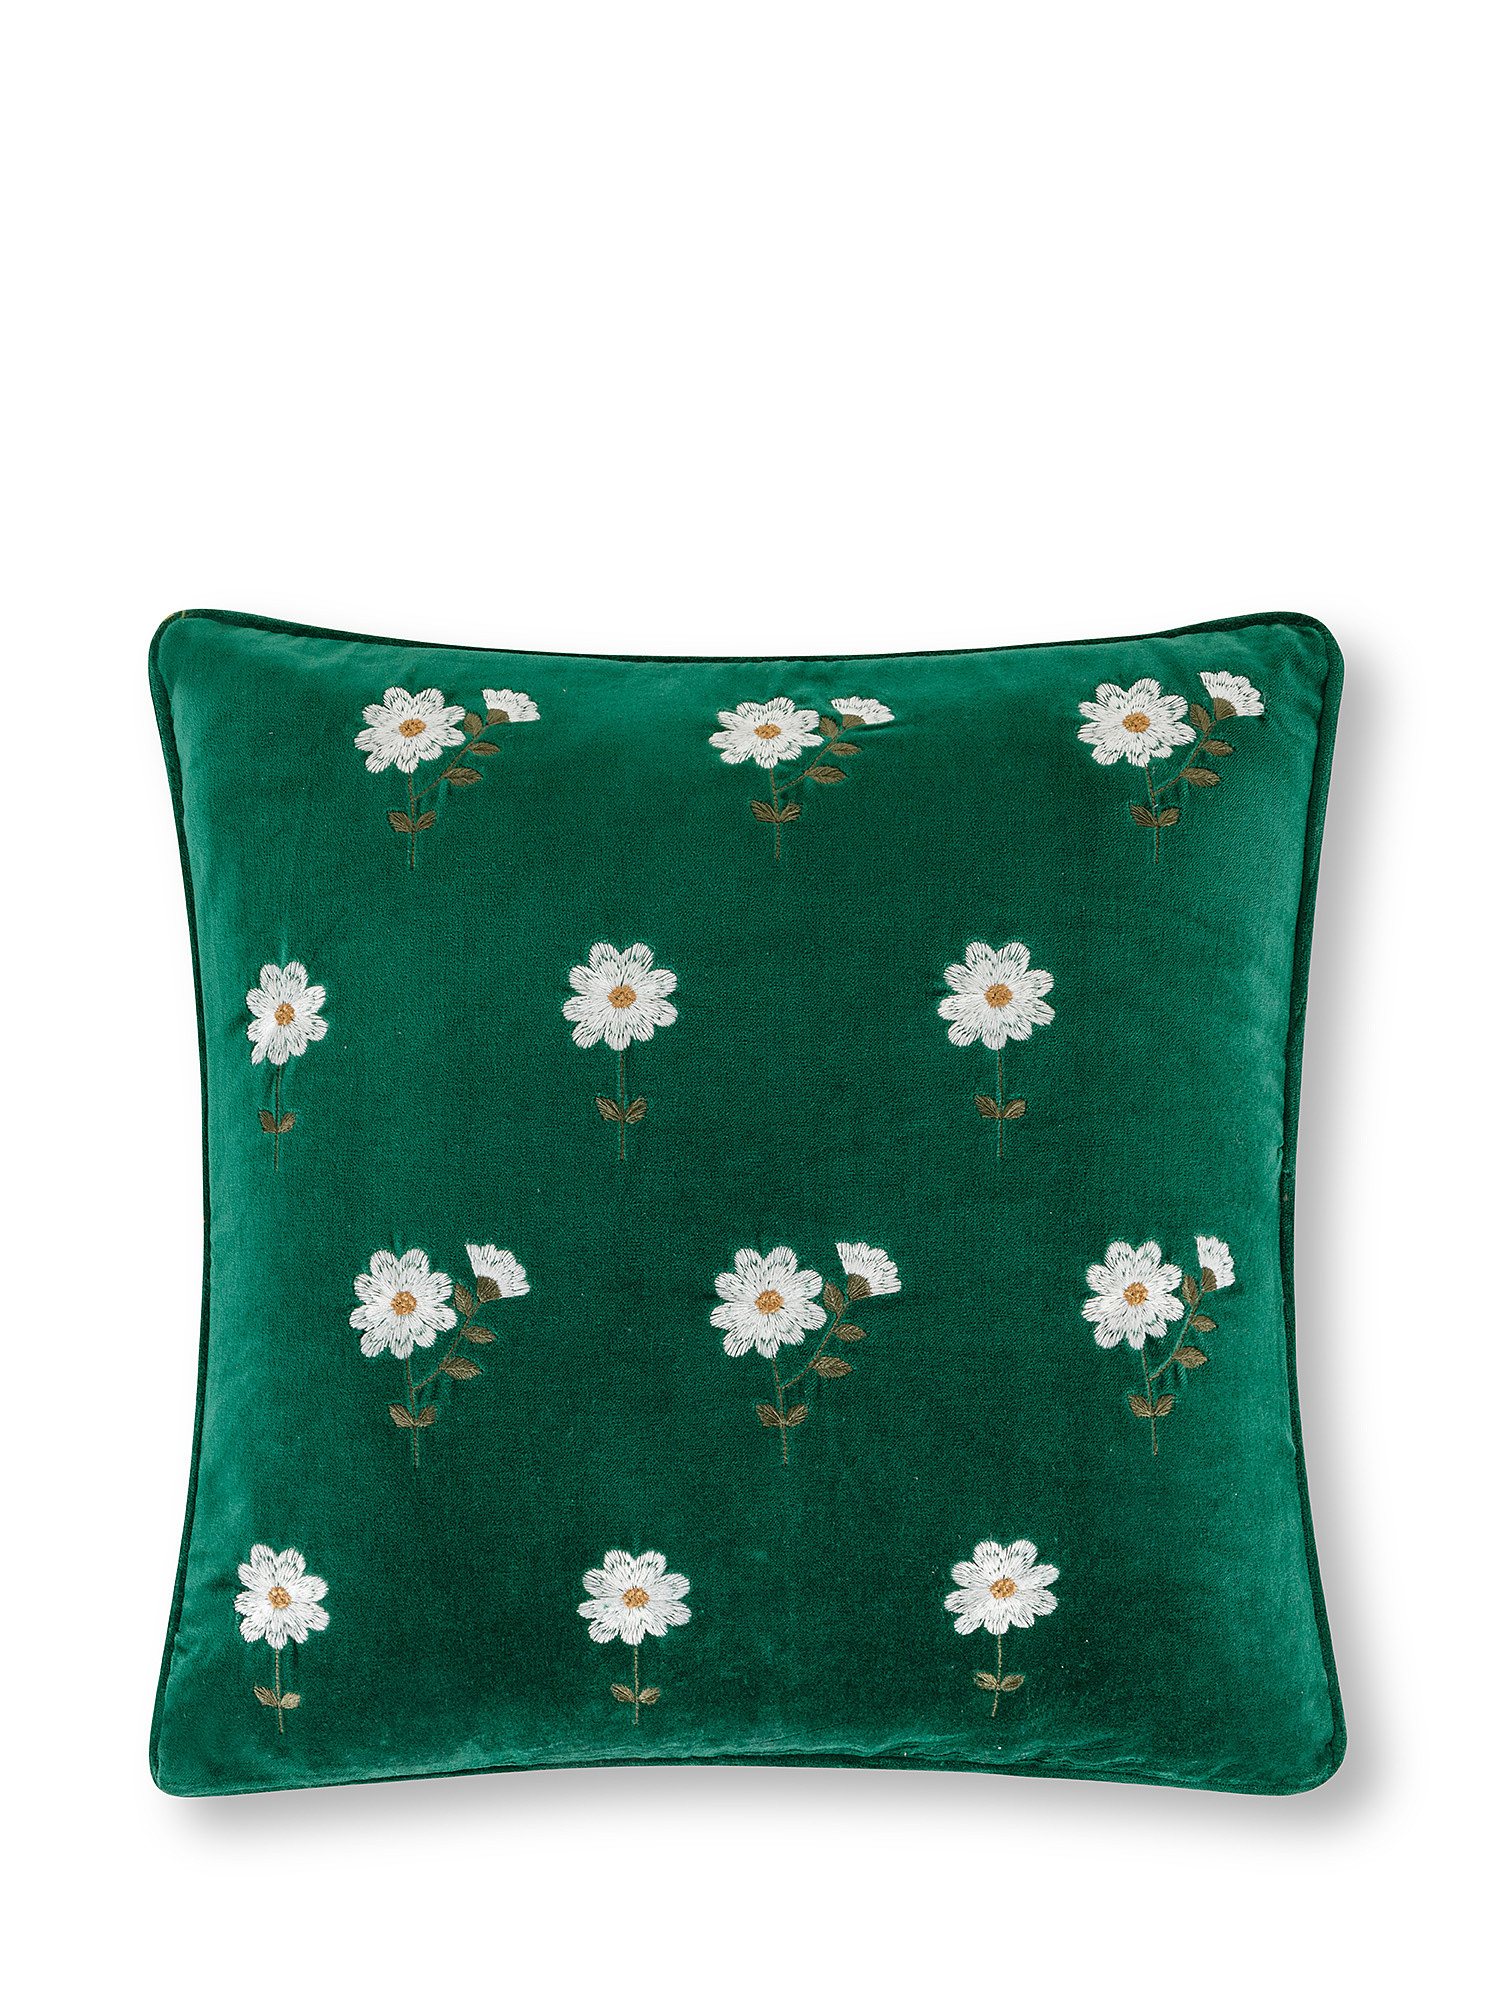 Cuscino velluto ricamo fiori 45x45cm, Verde, large image number 0